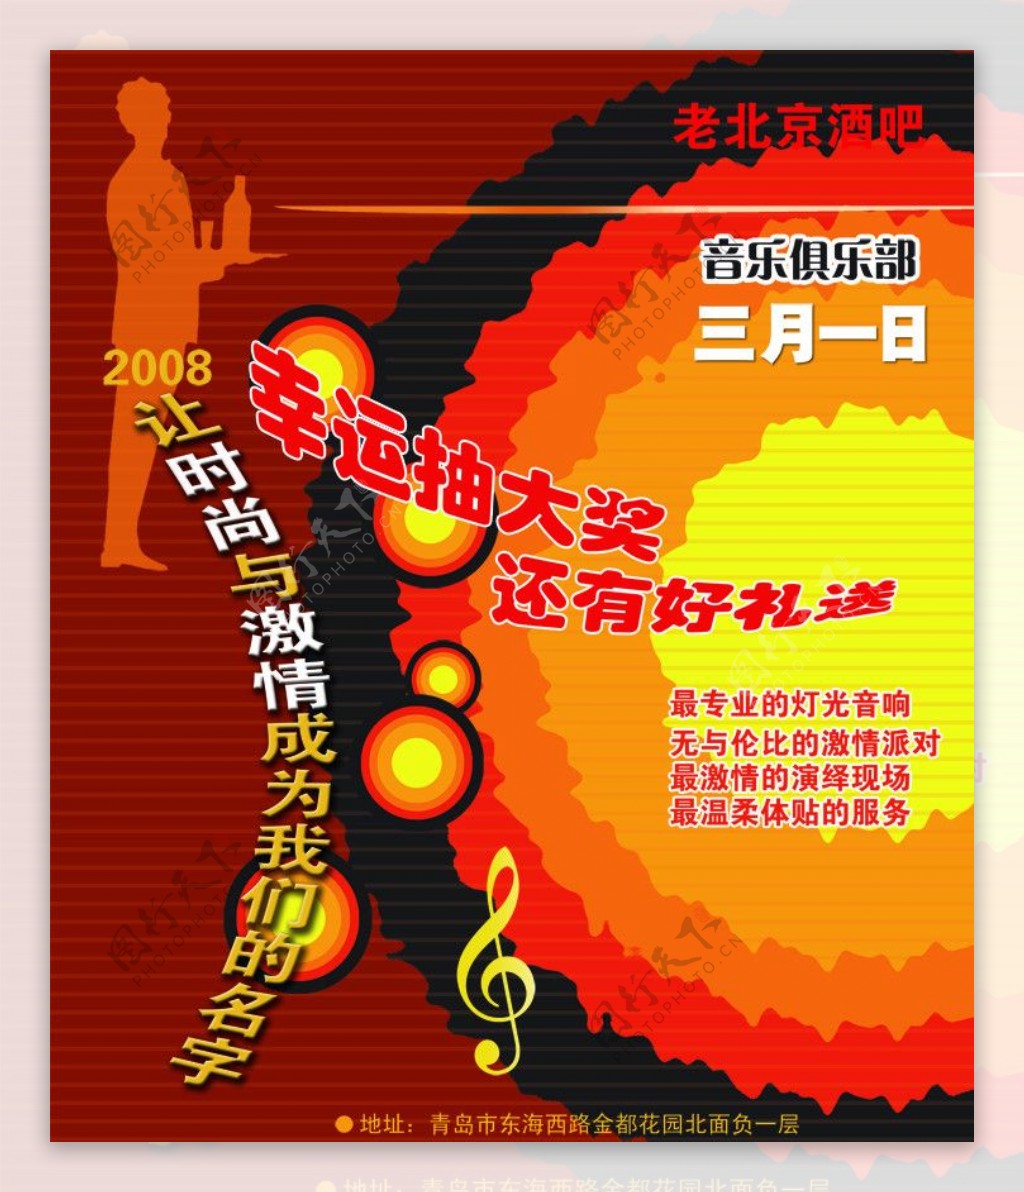 老北京酒吧活动宣传海报图片